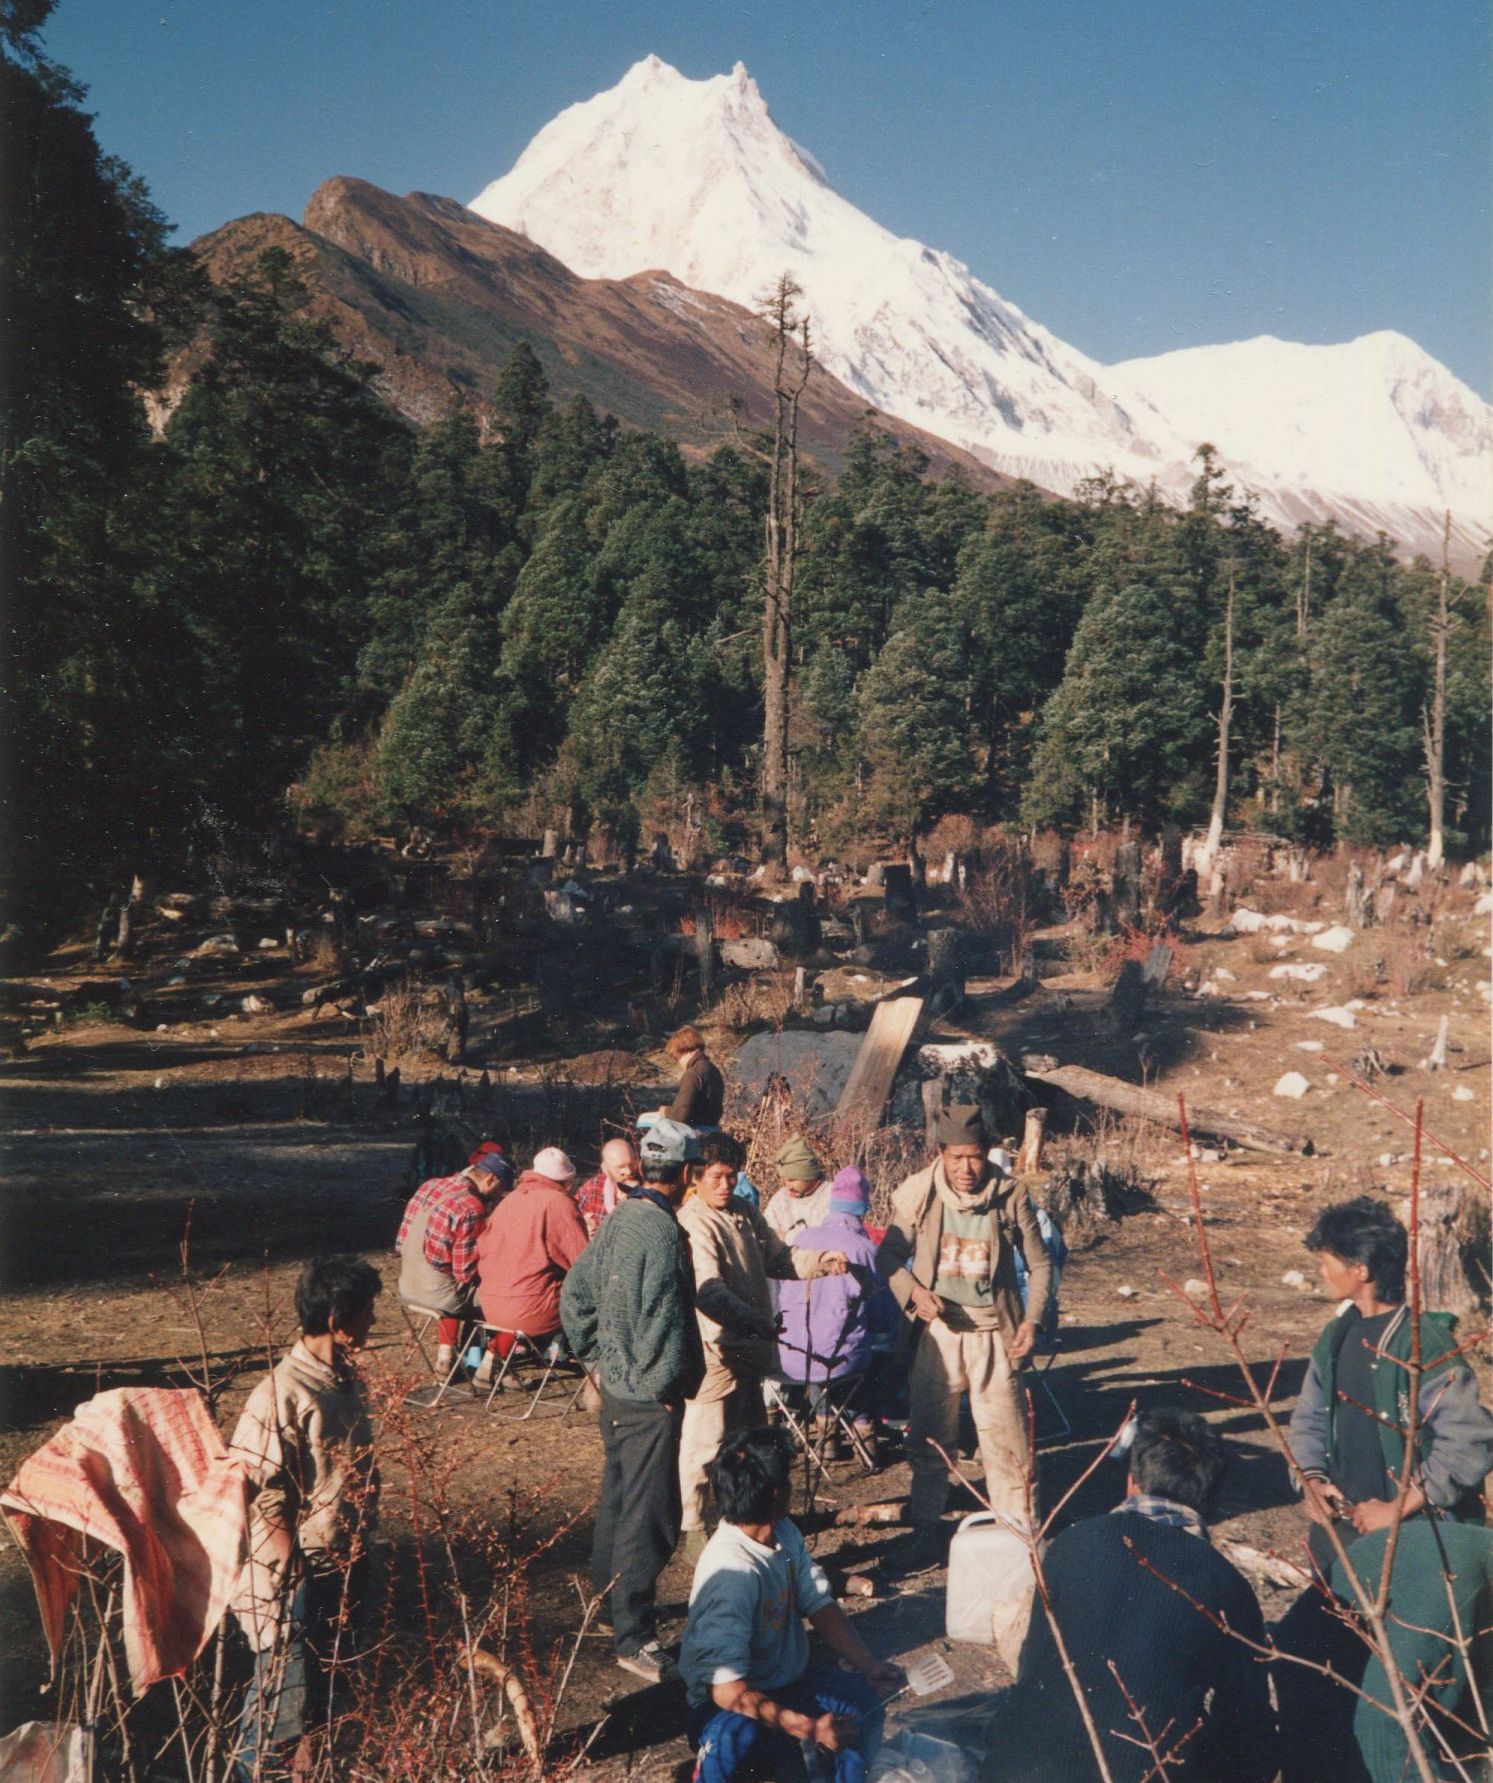 Mt.Manaslu from Buri Gandaki Valley